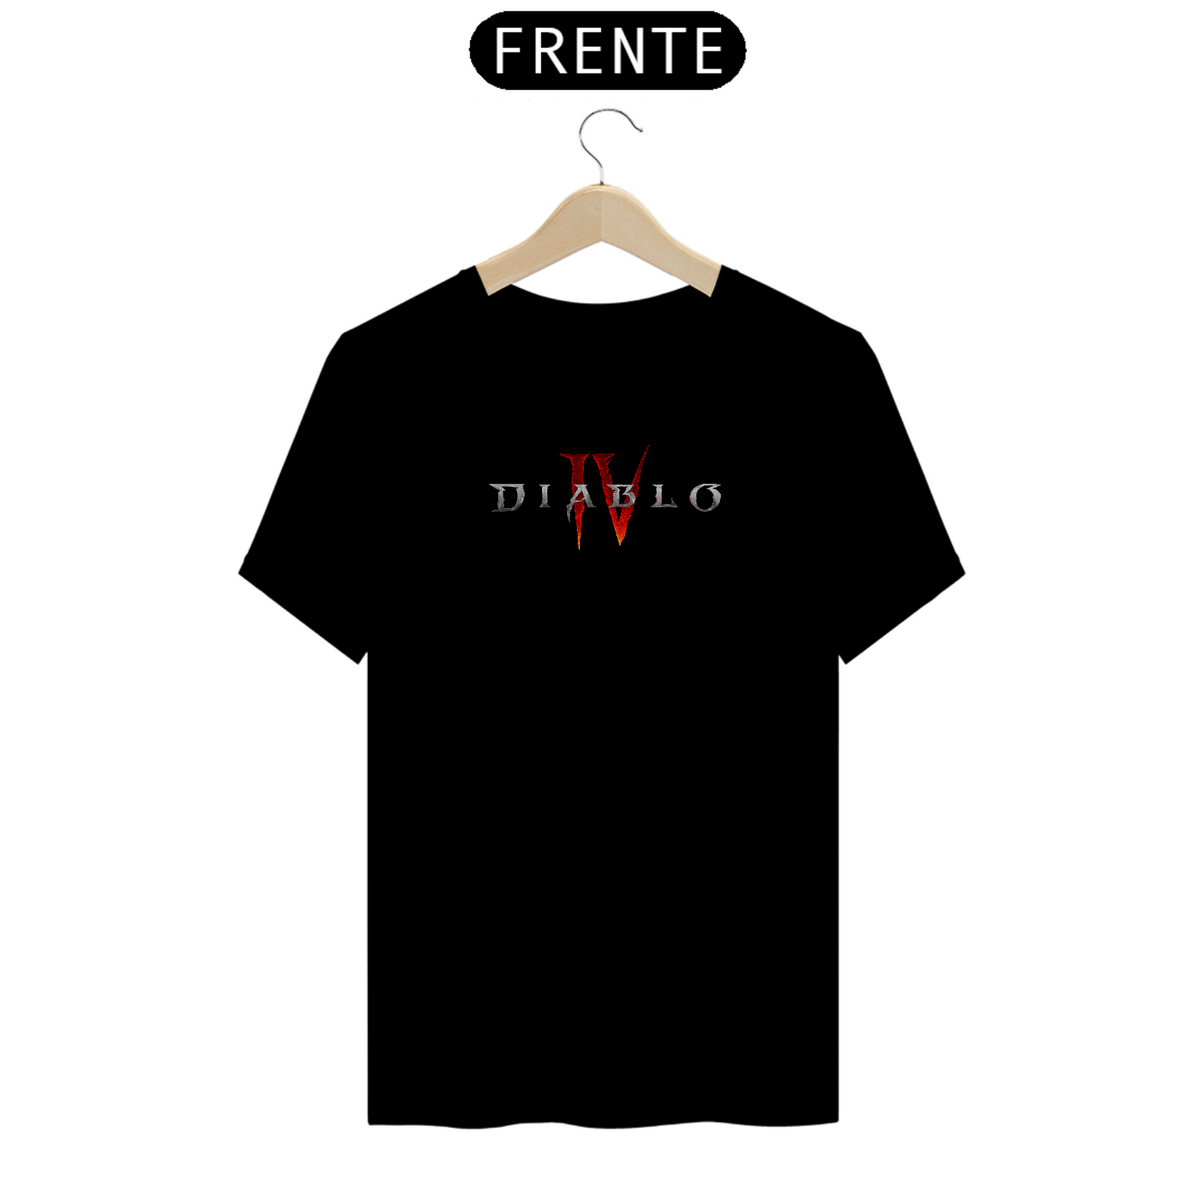 Nome do produto: Camiseta Diablo IV